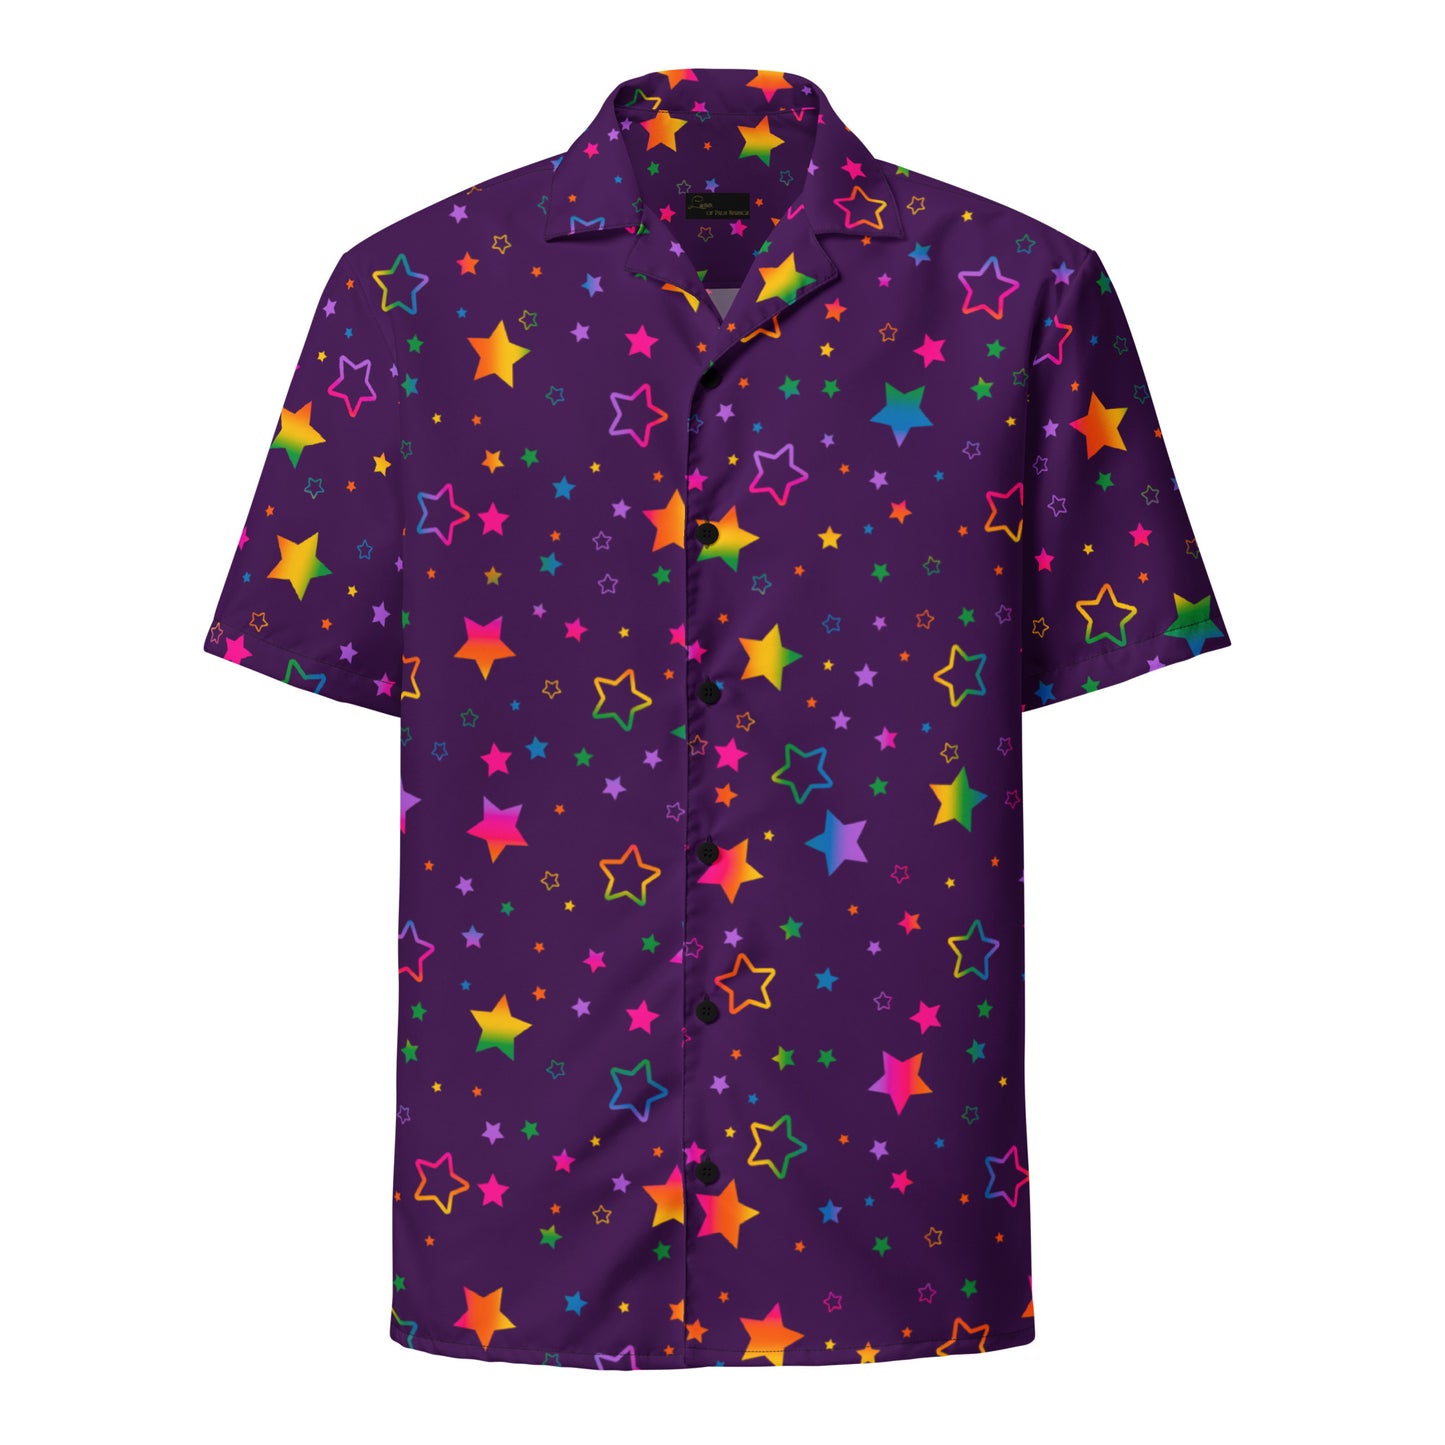 "The Superstar" Unisex button shirt